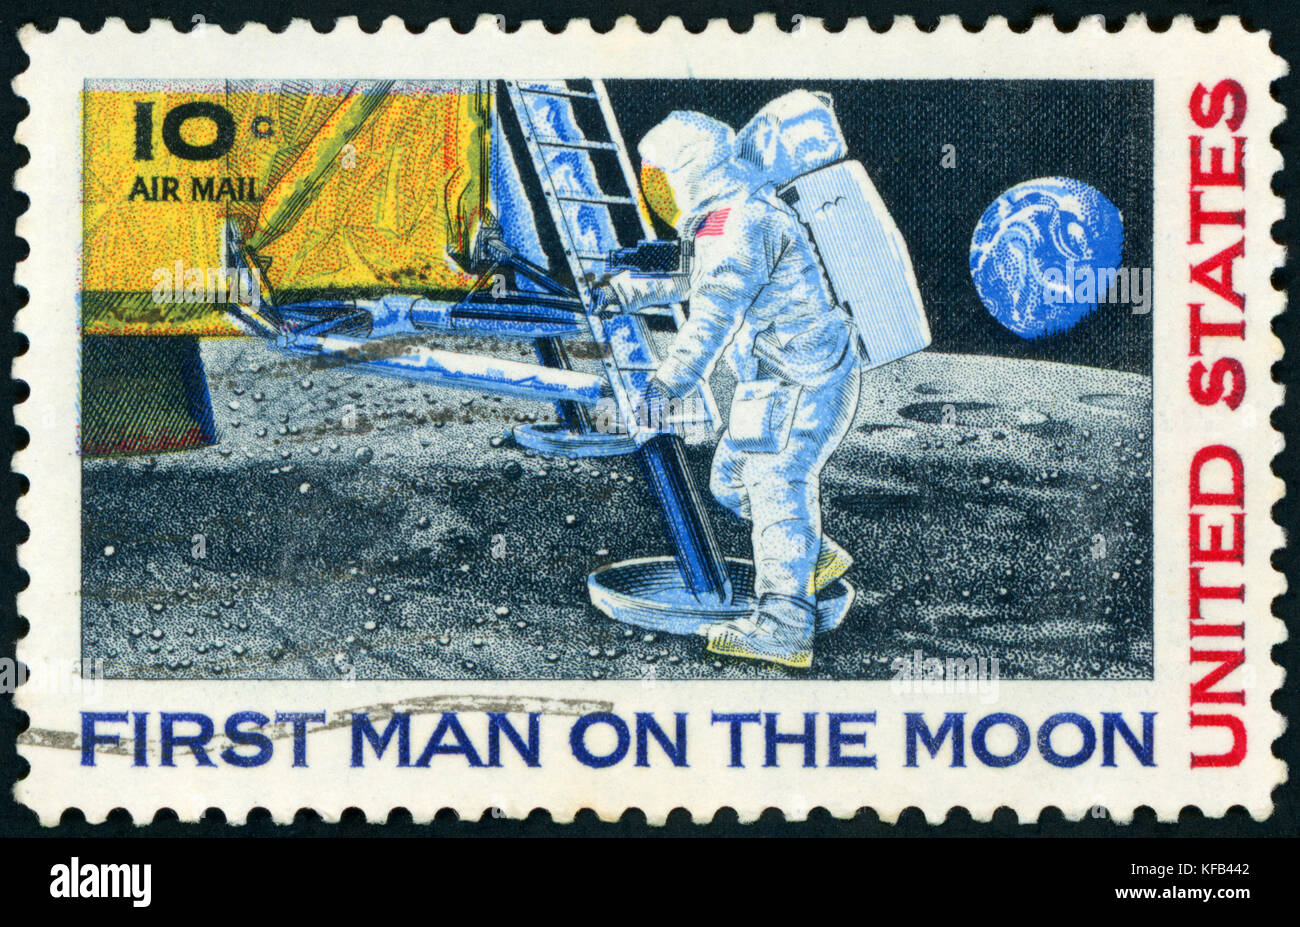 Francobollo (usa 1969 uomo del primo sbarco sulla luna, Apollo 11 Foto  stock - Alamy